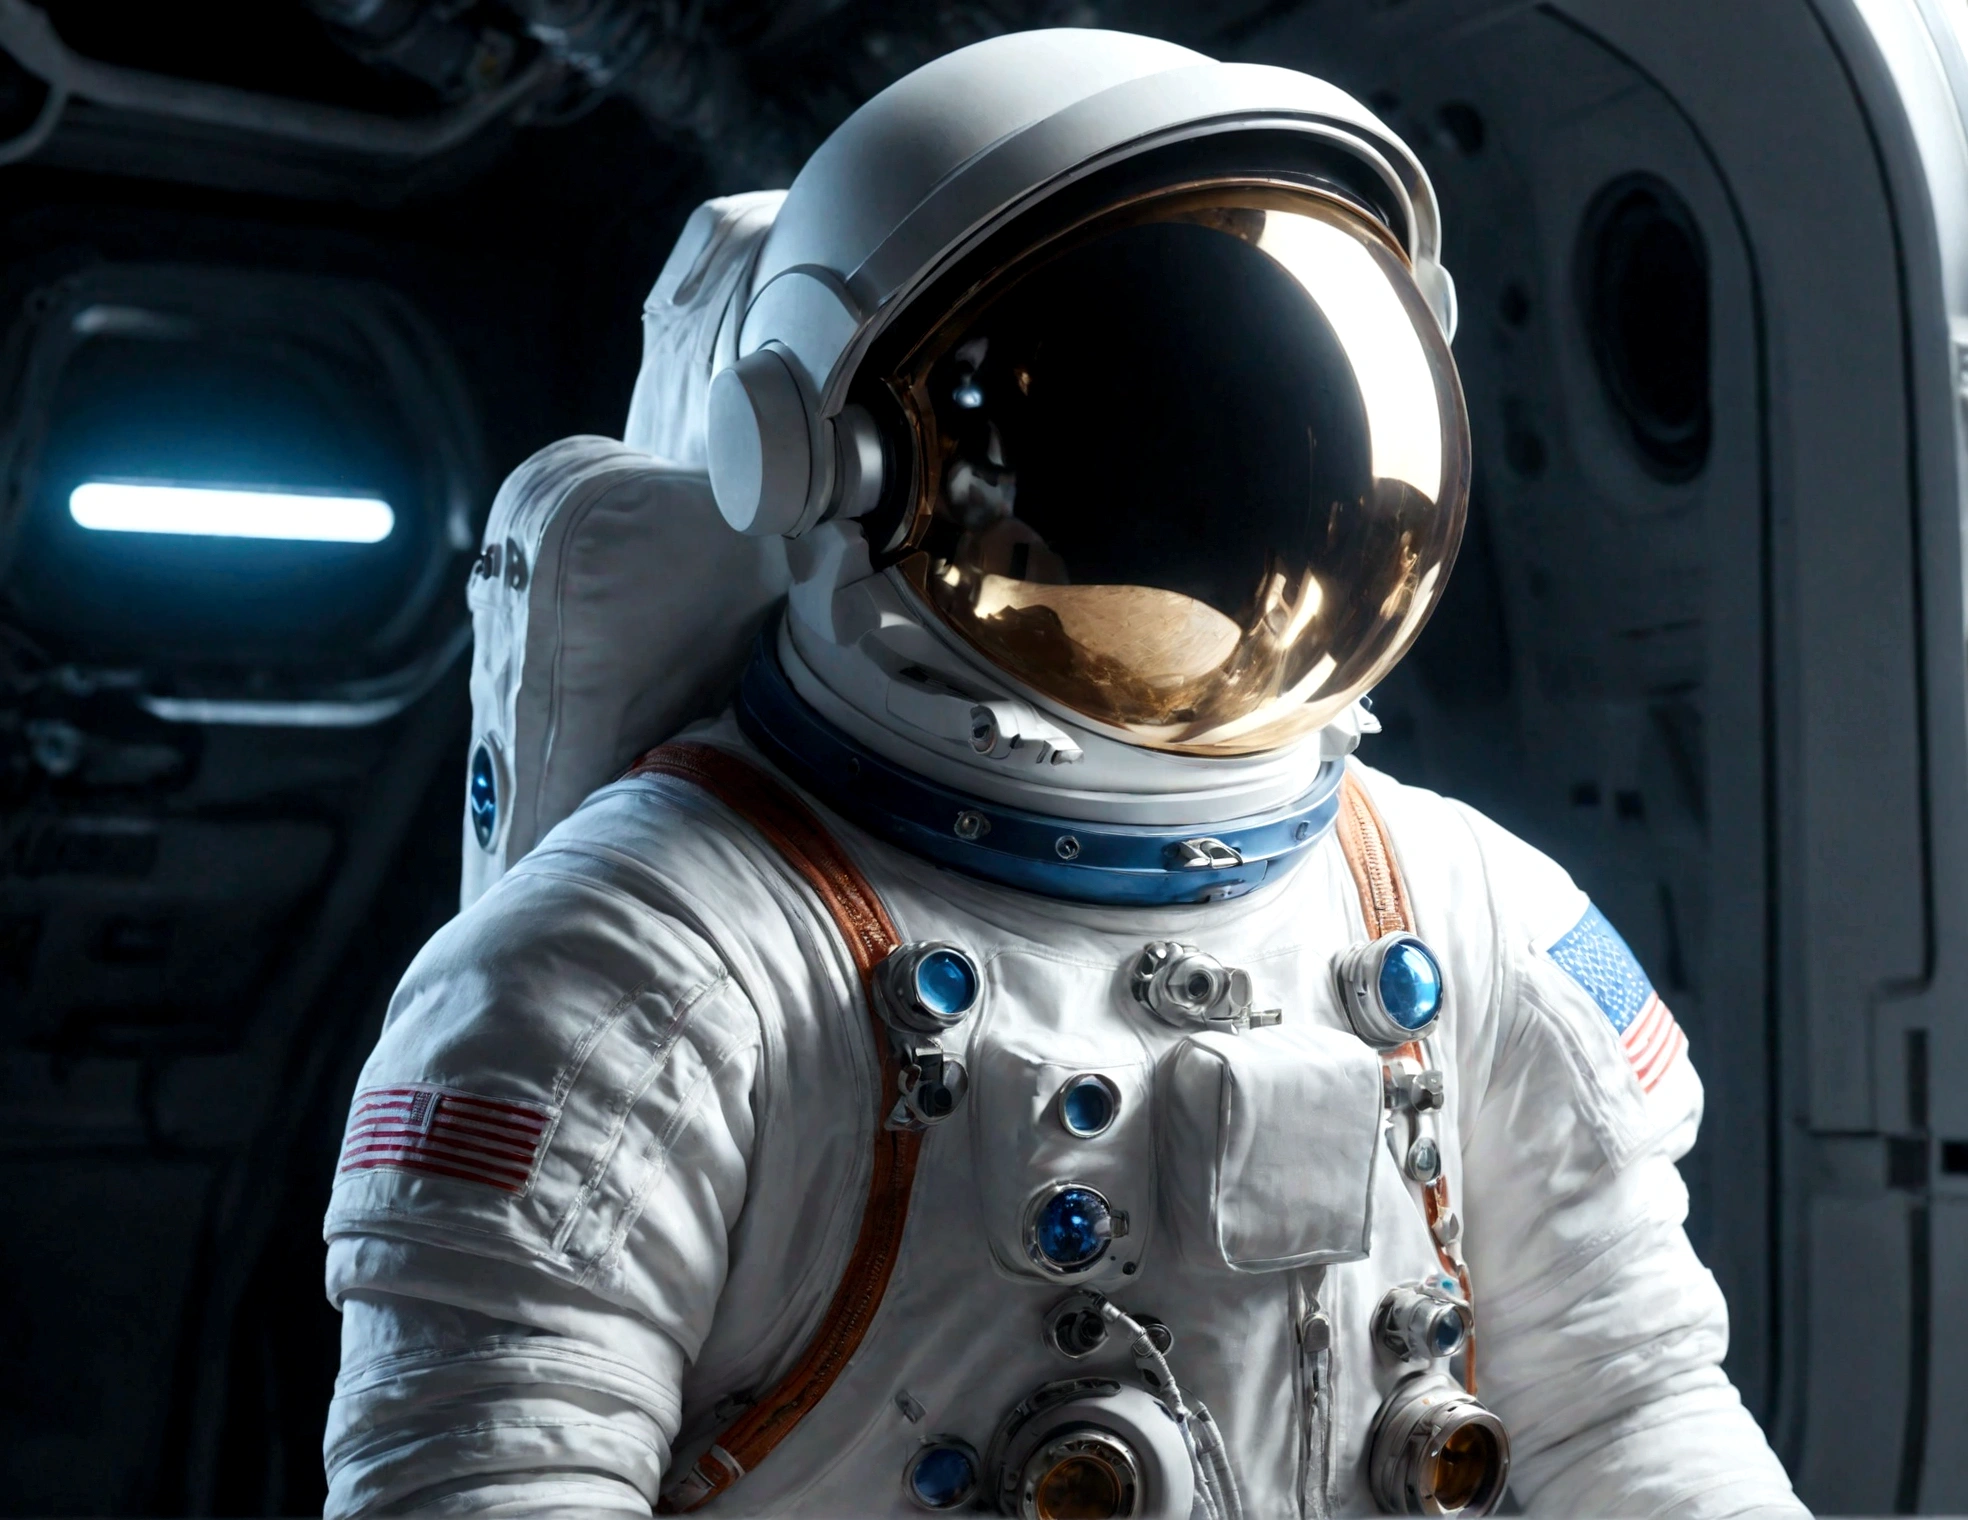 Der Astronaut ist ein 30-jähriger Mann.., weiße und blaue Metallic-Kleidung, filmisch, Bild 촬영, Halbe Hintergrundbeleuchtung, Hintergrundbeleuchtung, dramatische Beleuchtung , Glühlampenlicht, sanfte Beleuchtung, unglaublich detailliert und komplex, hyper maximalist, Kunst, elegante pose, dynamisch, Bild, Volumen , Sehr detailiert, komplizierte Details, Gwise의 Sehr detailiert 걸작, zukünftige Umwelt